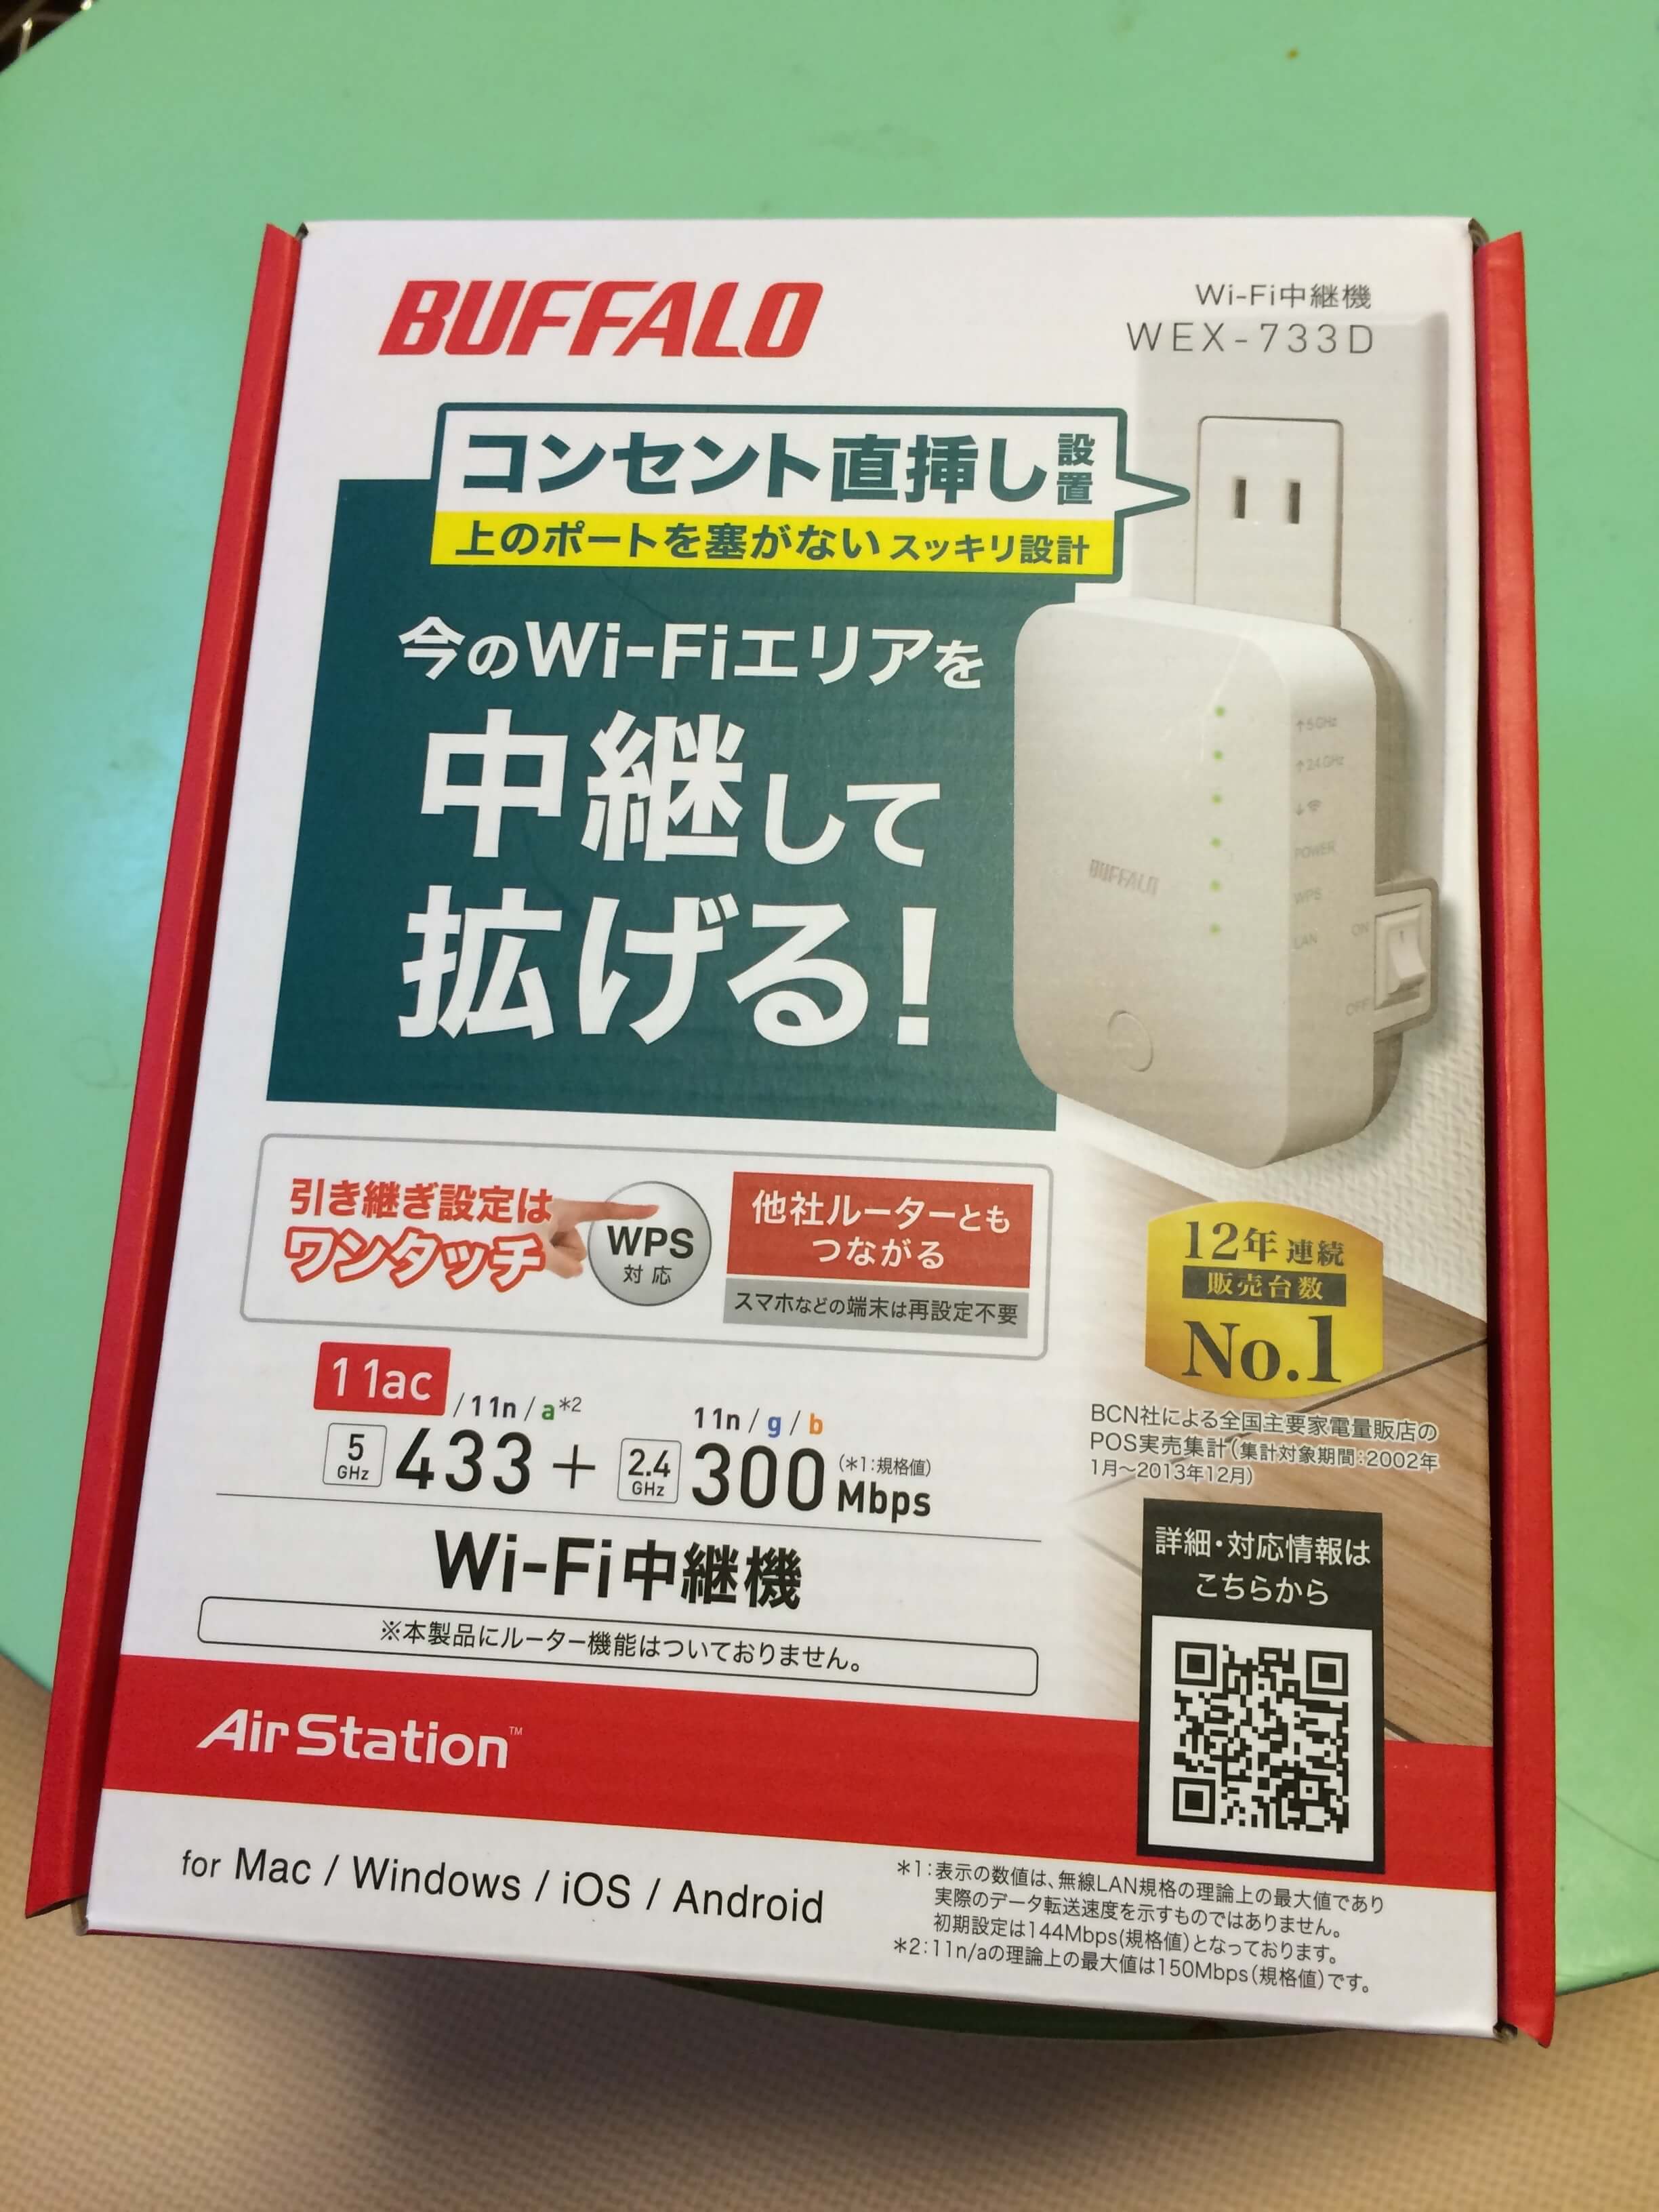 BUFFALO：無線LAN中継機で2Fの電波状況を改善する(WEX-733D編) - よしまさのブログ